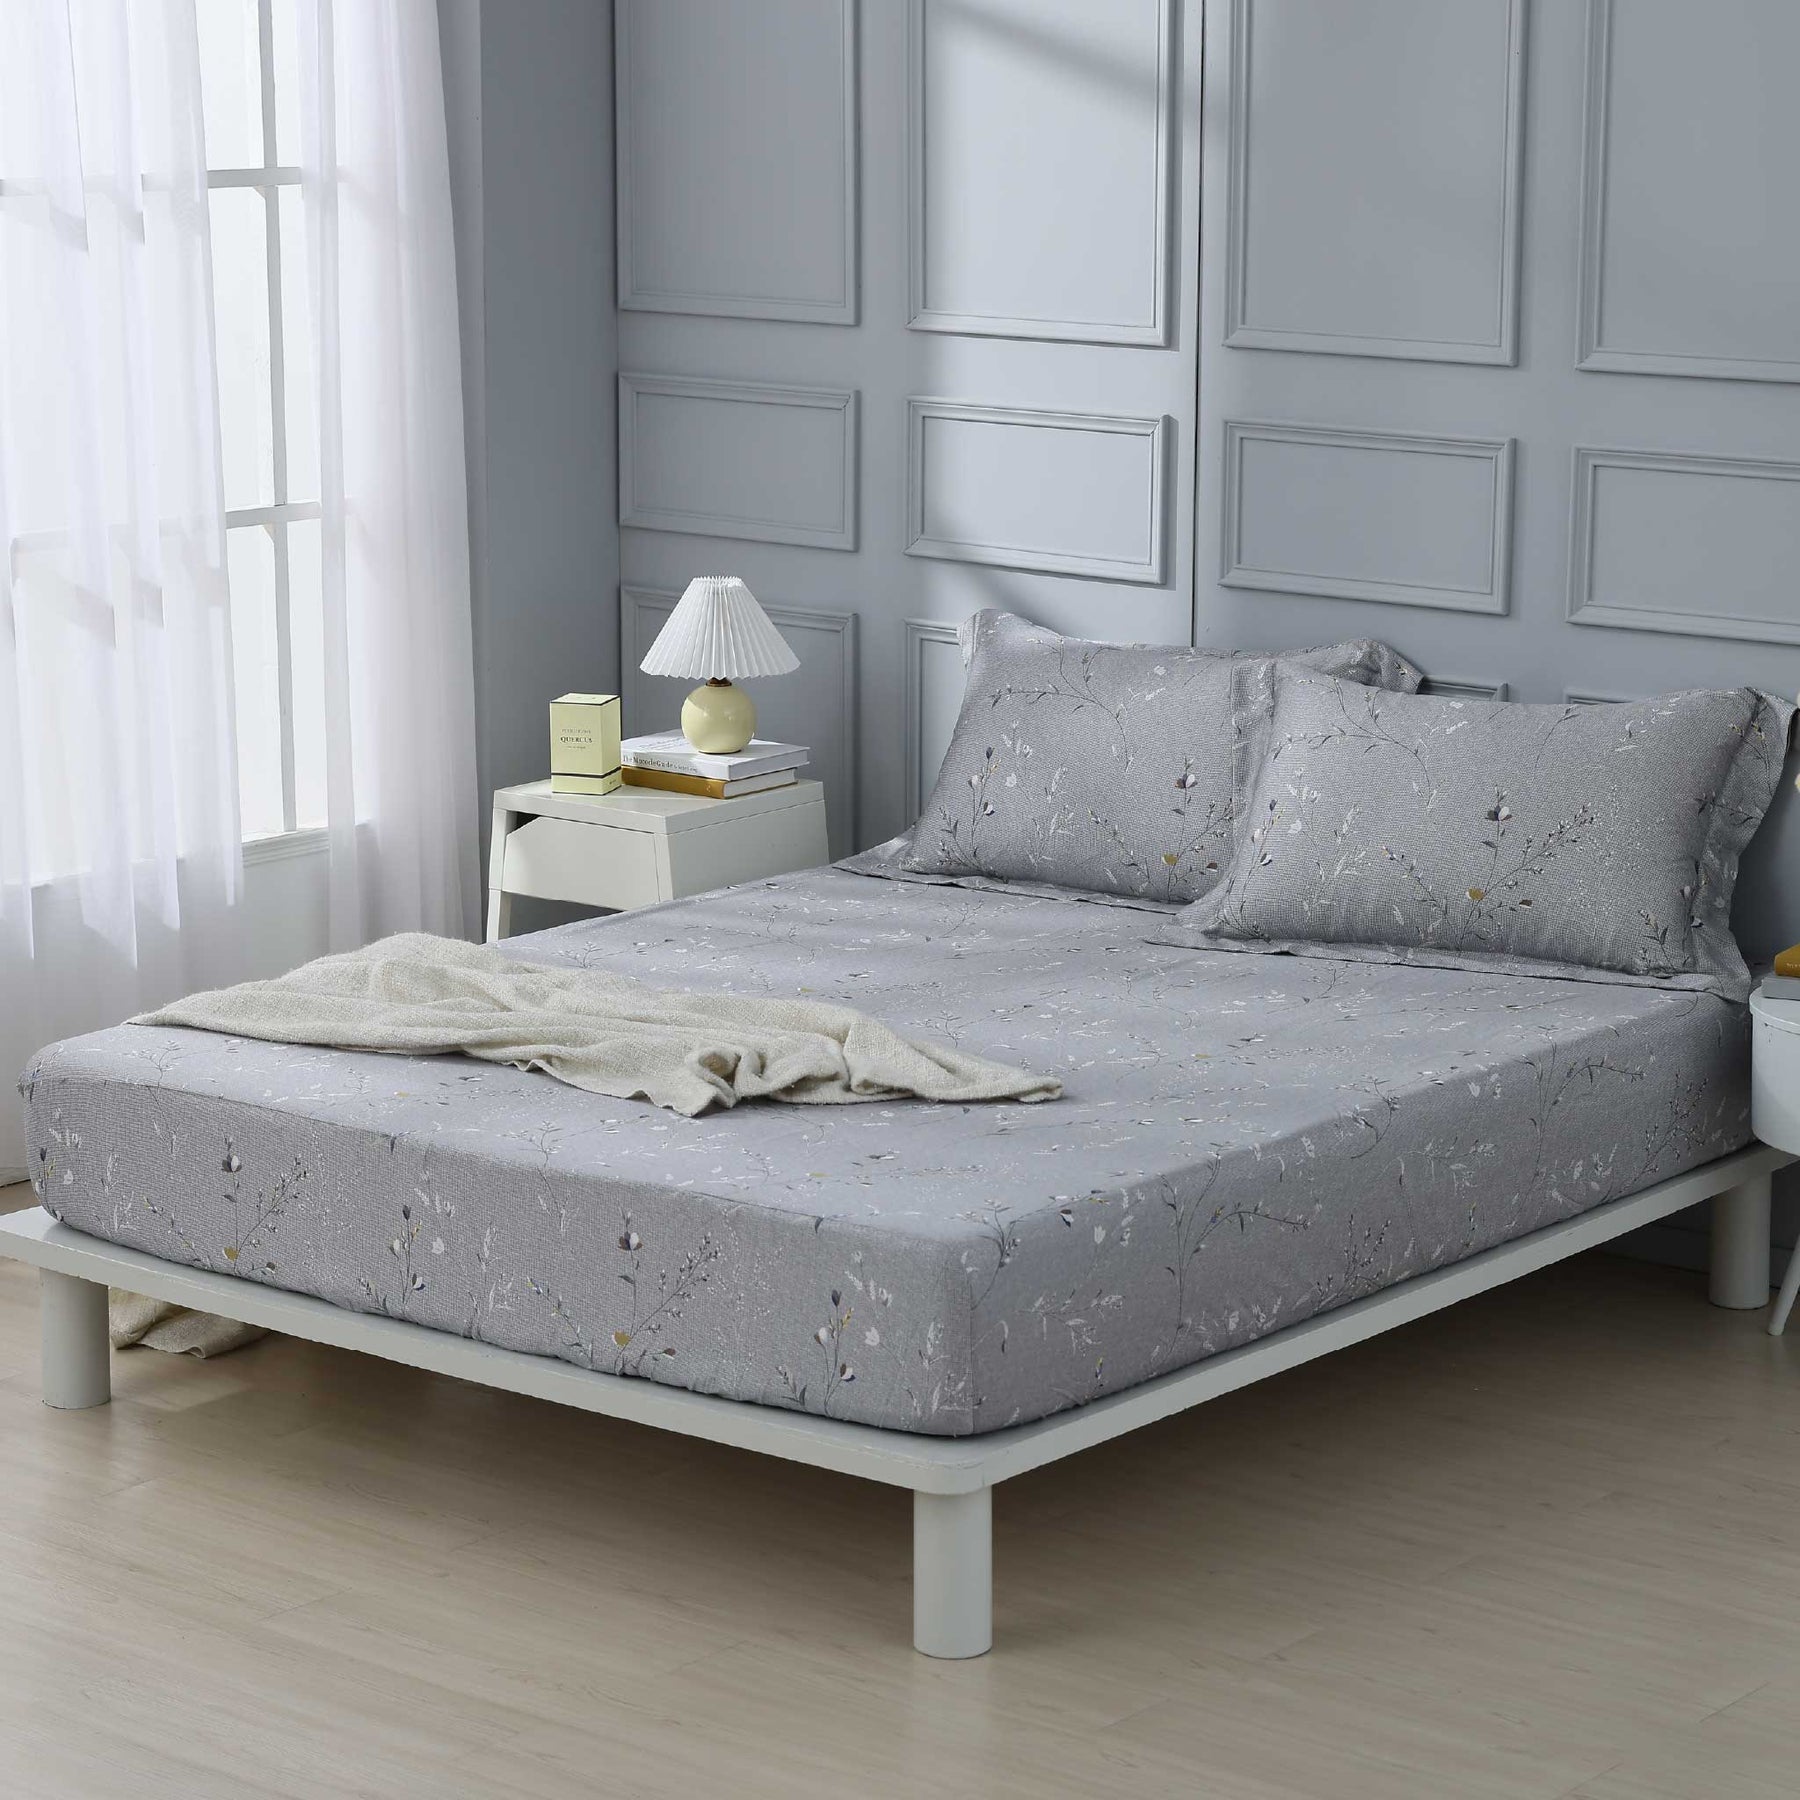 【IKEA歐規】60支天絲/IKEA歐規/床包枕套被套/印花系列